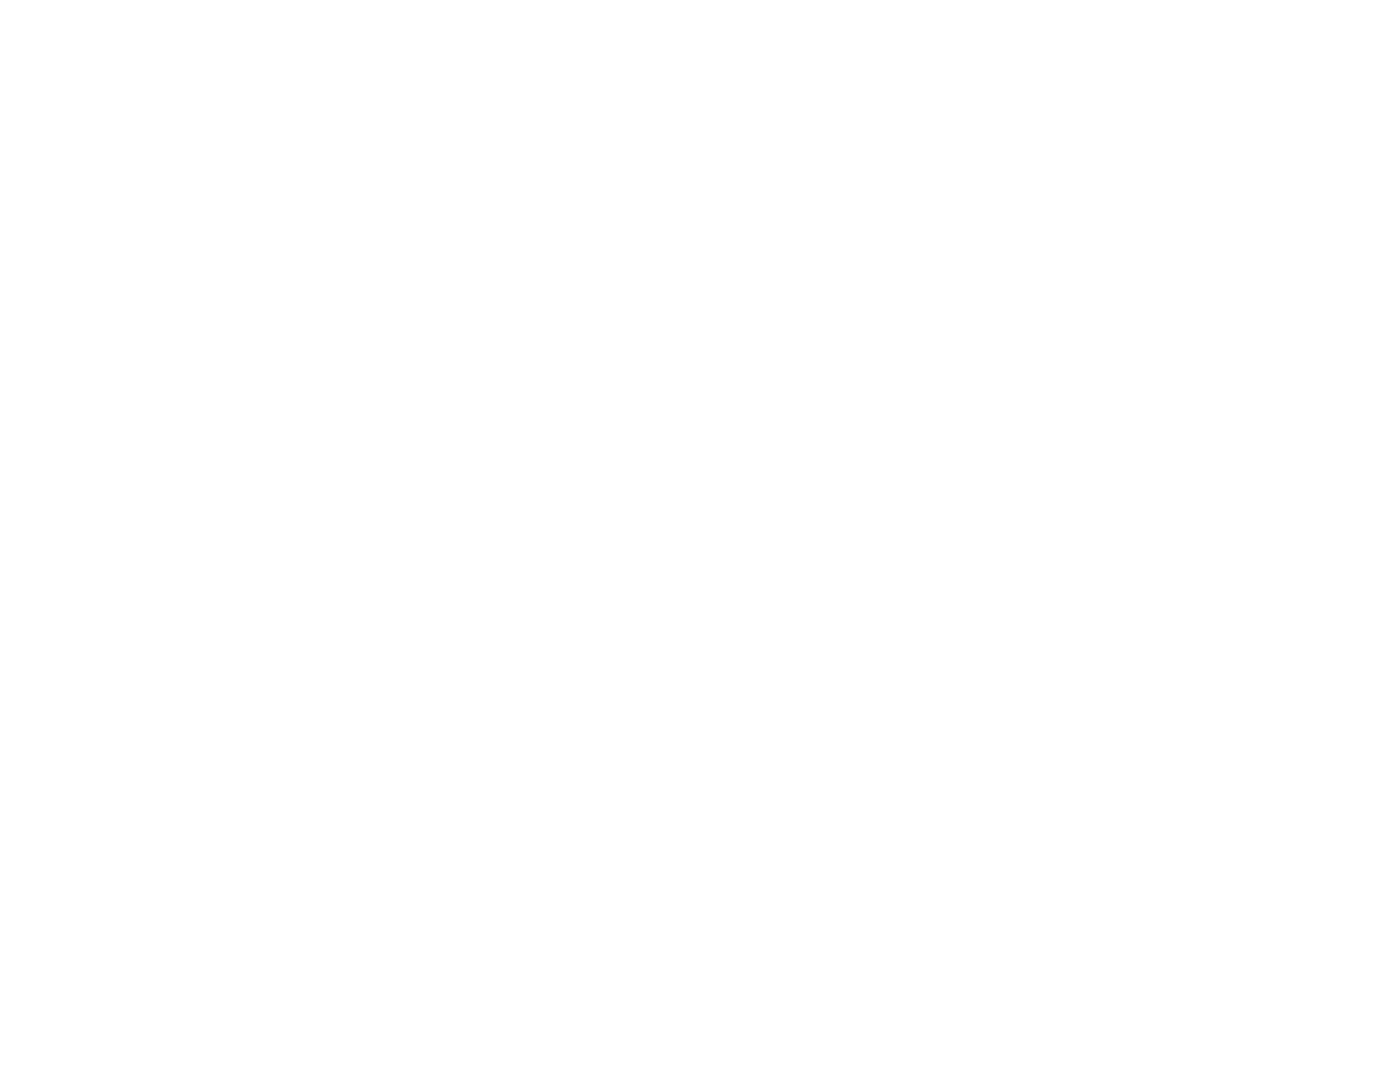 Junebug Productions